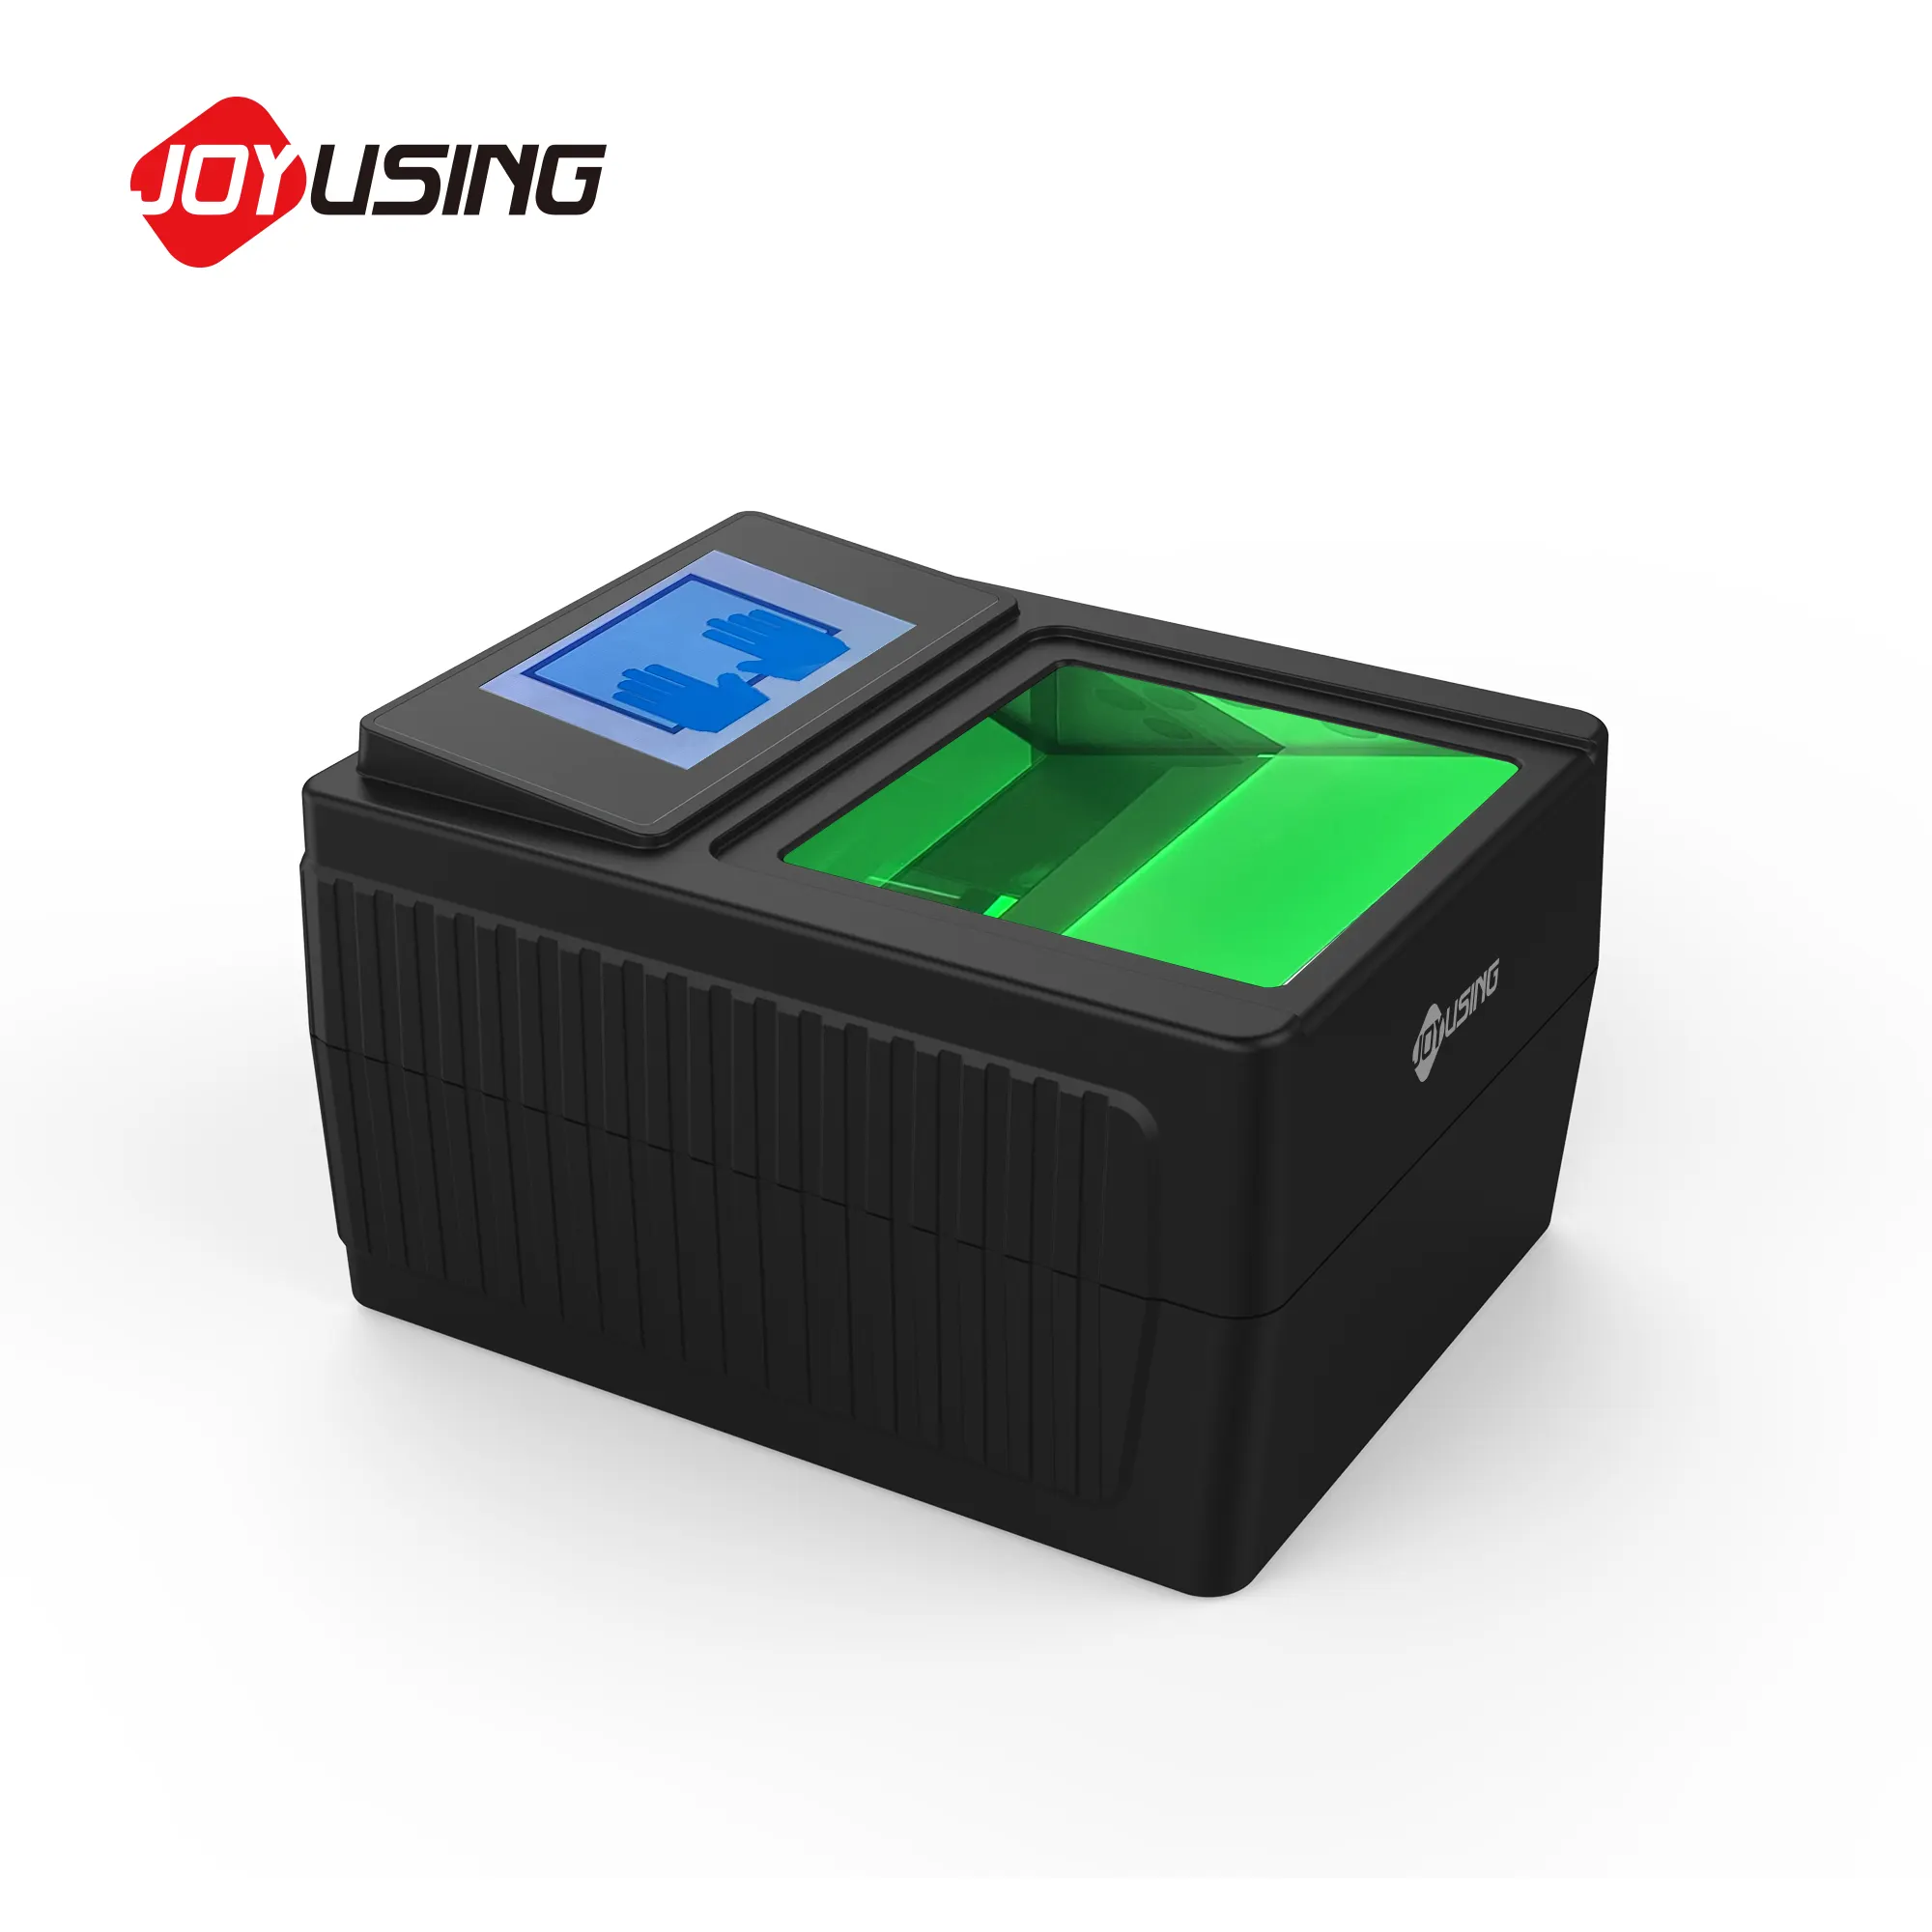 biometric fingerprint scanner 4-4-2 fingerprint reader fingerprint capture USB multi fingers Security